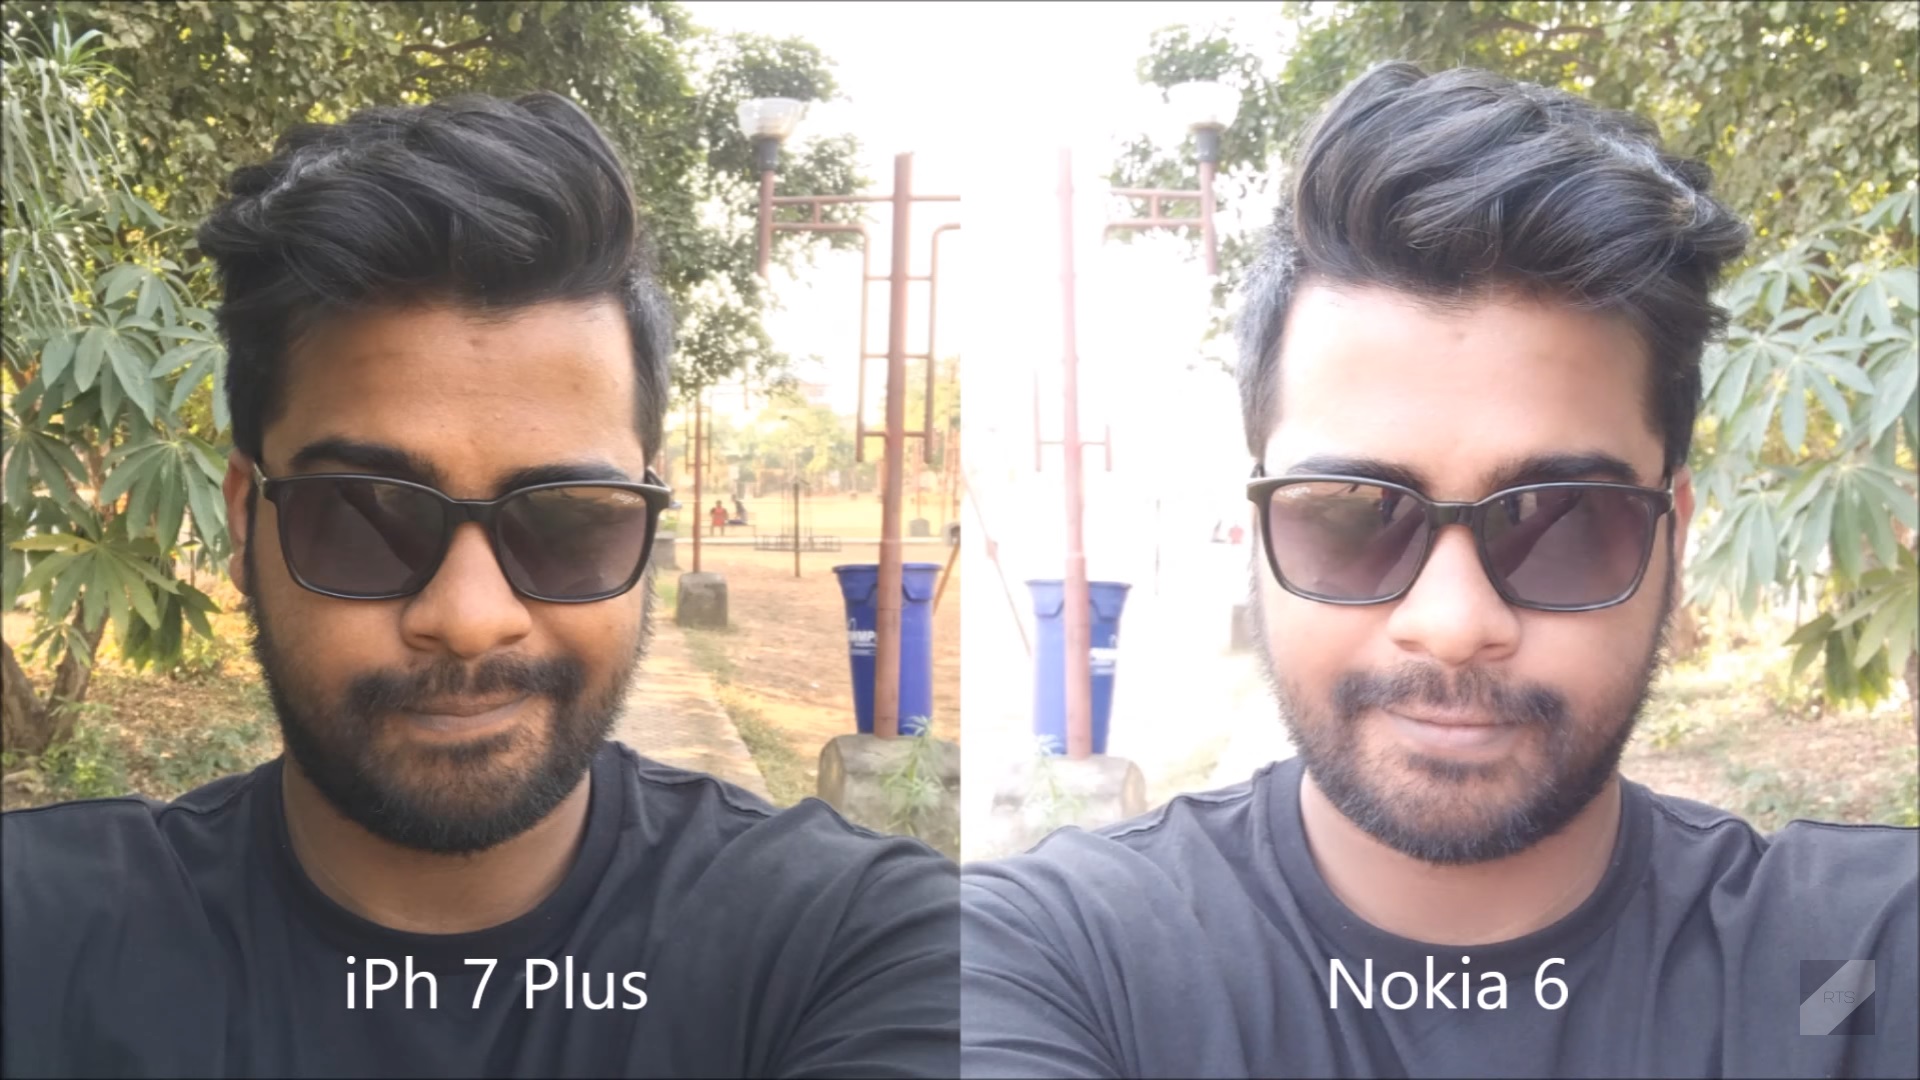 เทียบรุ่นใหญ่ !! ชมคลิปเทียบประสิทธิภาพกล้อง Nokia 6 VS iPhone 7 Plus จะเป็นอย่างไรมาดูกัน !!